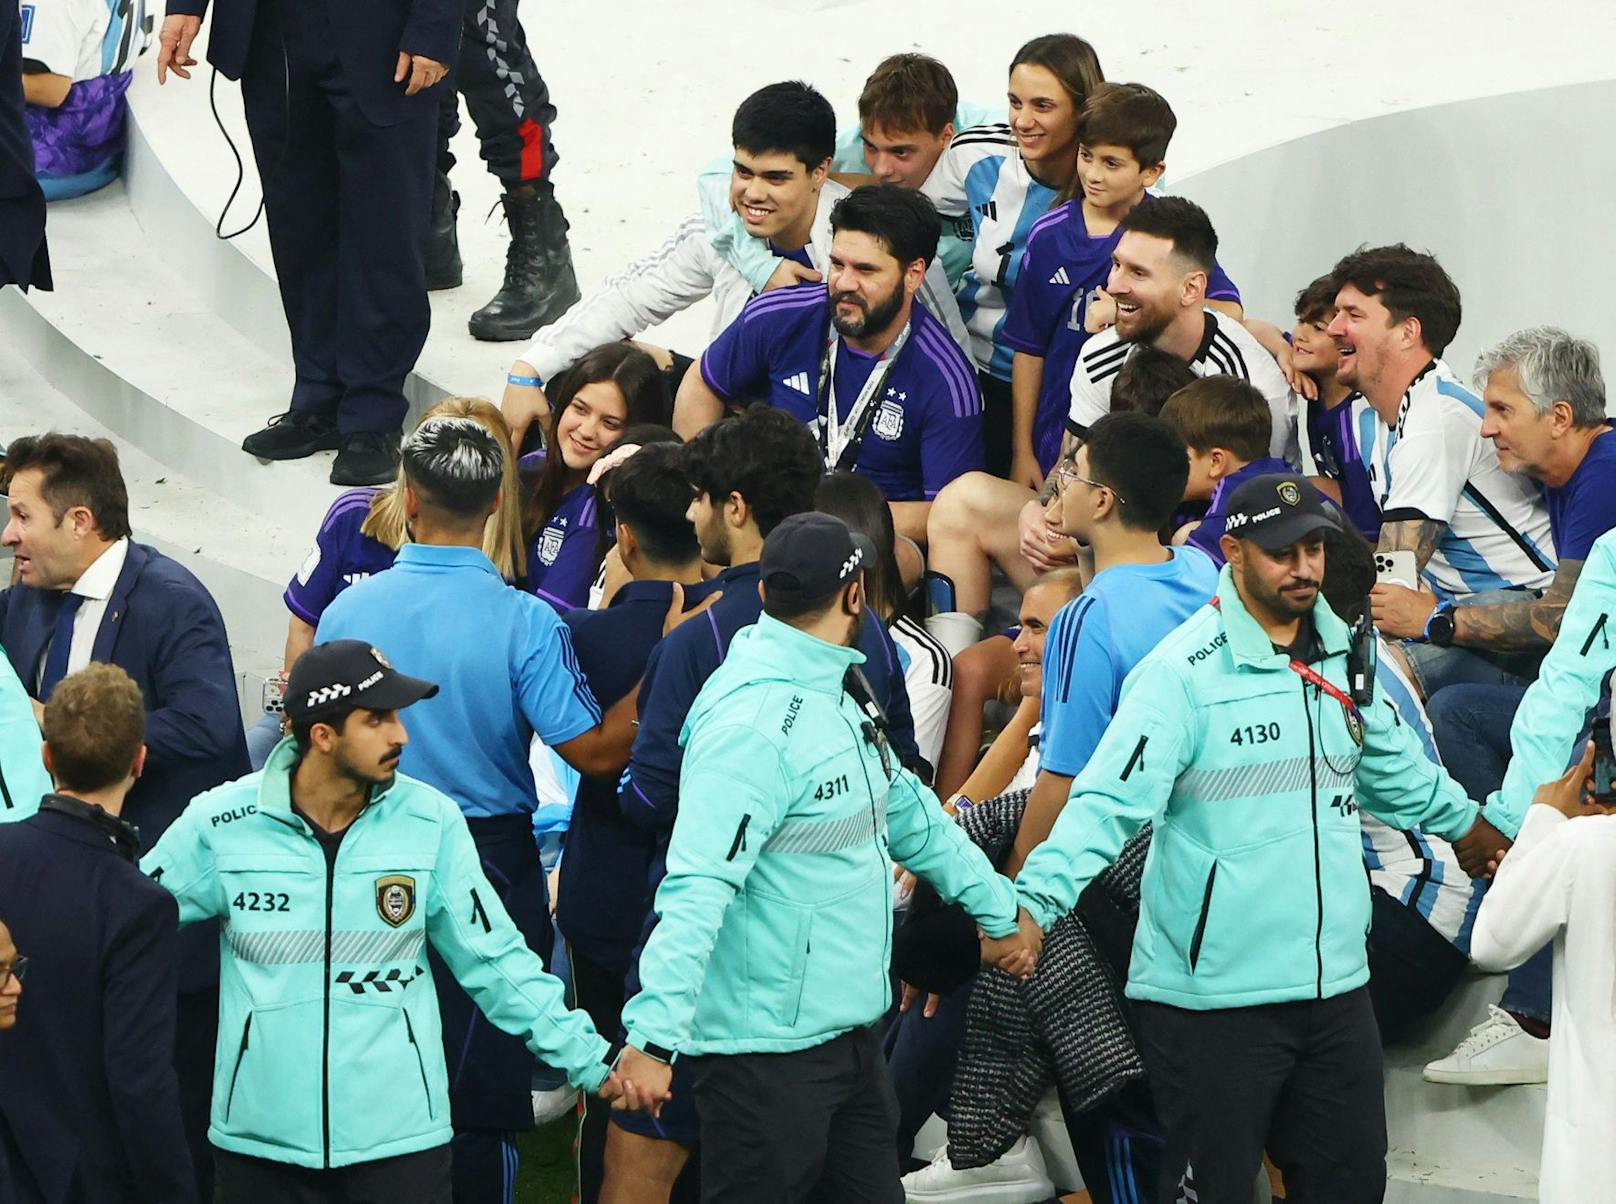 Der Messi-"Clan" wird bei den gemeinsamen Pokal-Fotos von einer menschlichen Sicherheits-Kette abgeschirmt.